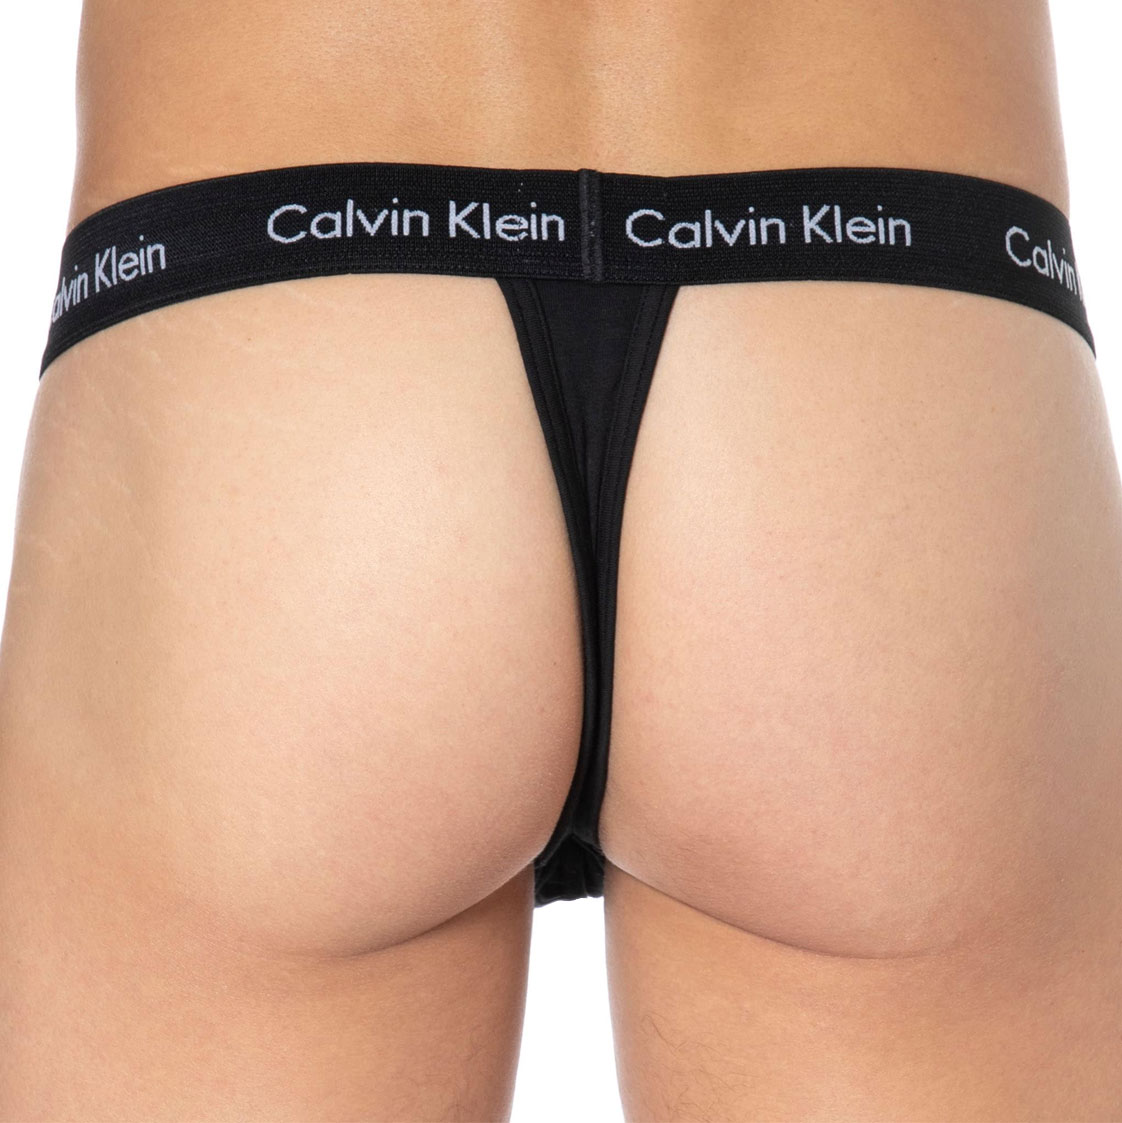 Calvin Klein herenstring cotton stretch 2-pack